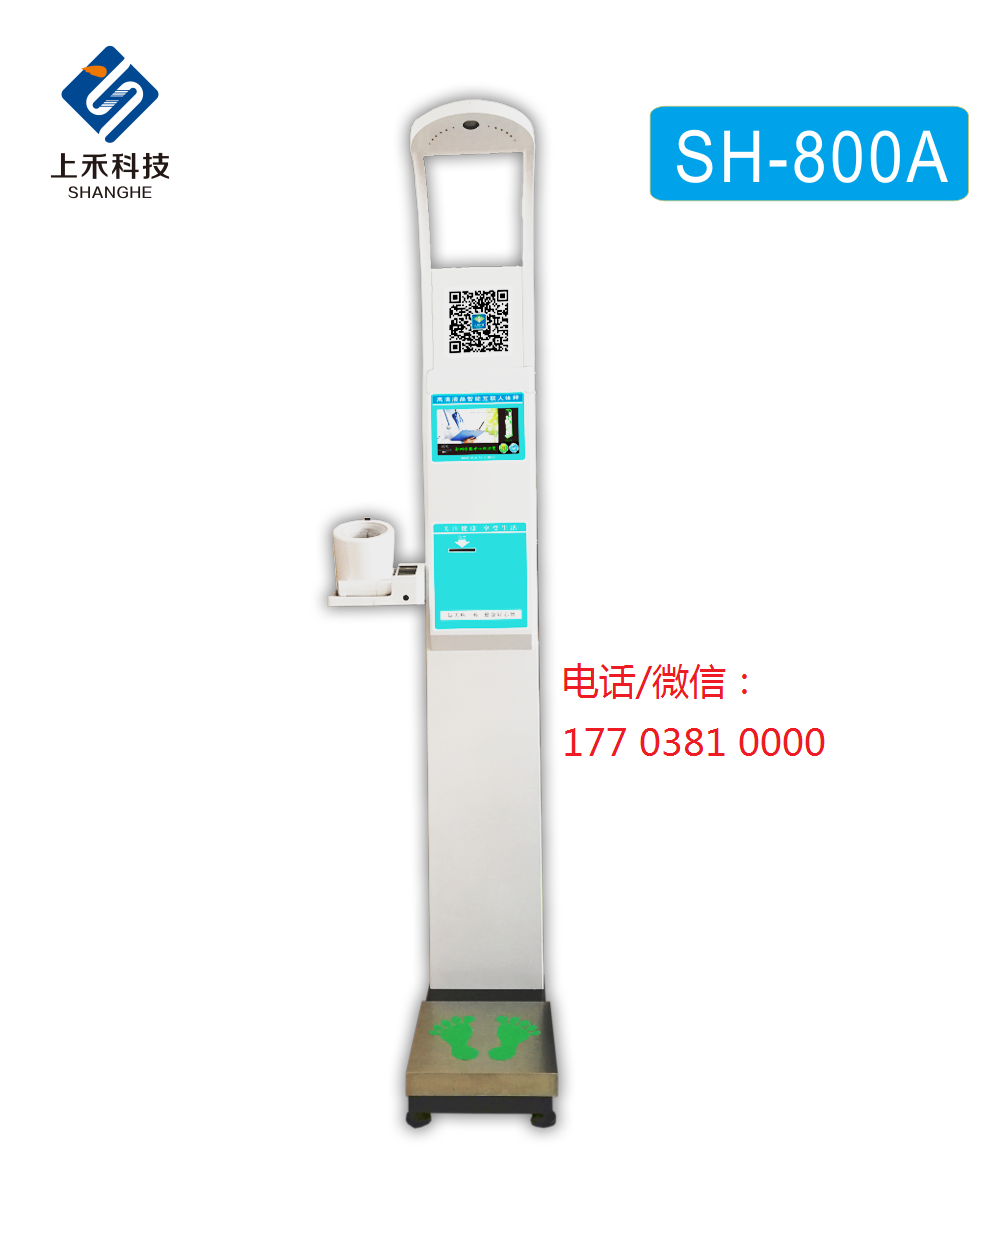 SH-800A型智能互联身高体重血压心率秤